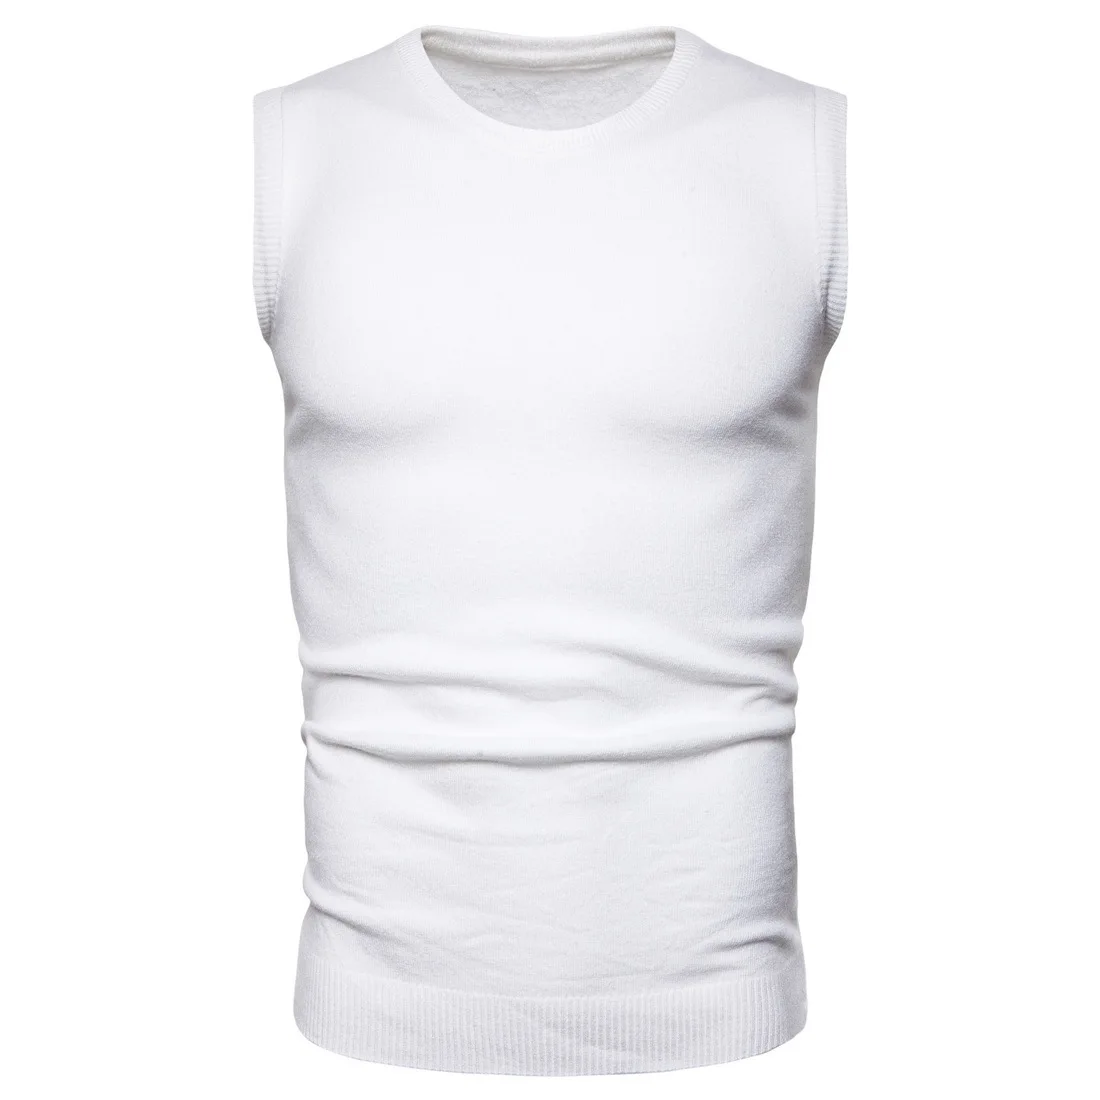 YM026 Новая модная мужская одежда высокоэластичный вязаный жилет сплошной цвет европейский размер мужские свитера - Цвет: Белый